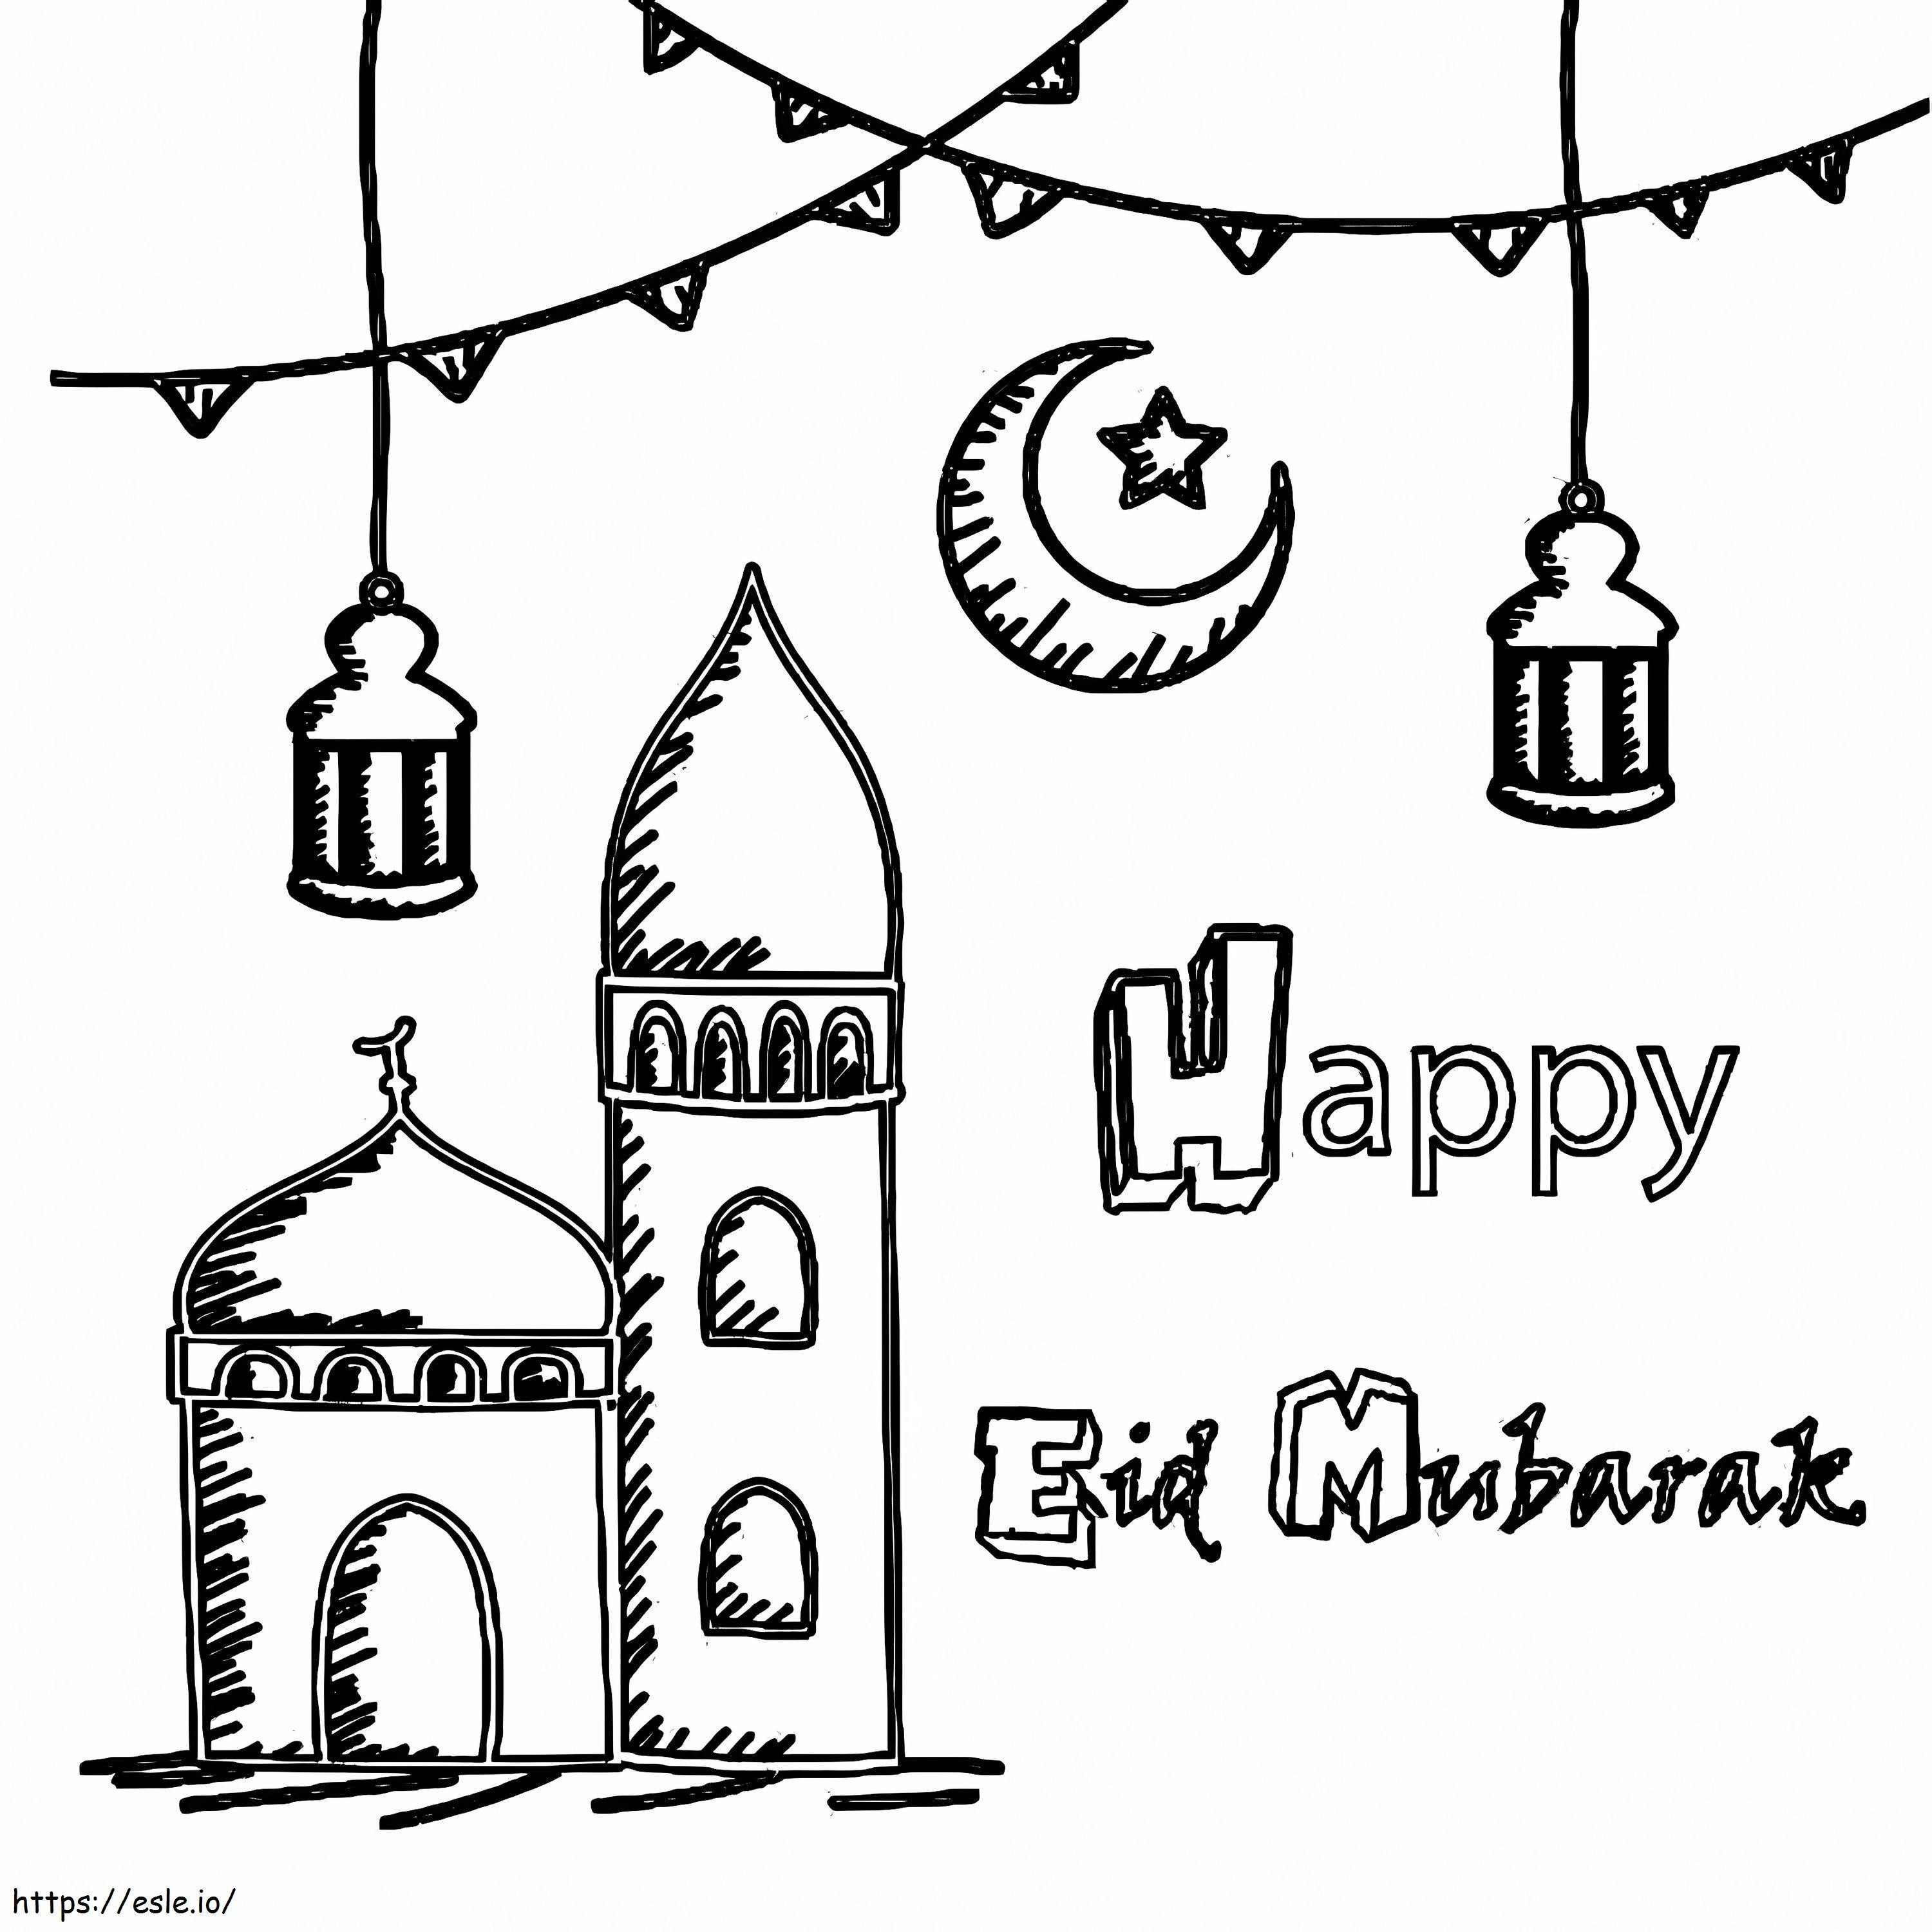 Hyvää Eid Mubarak 1 värityskuva